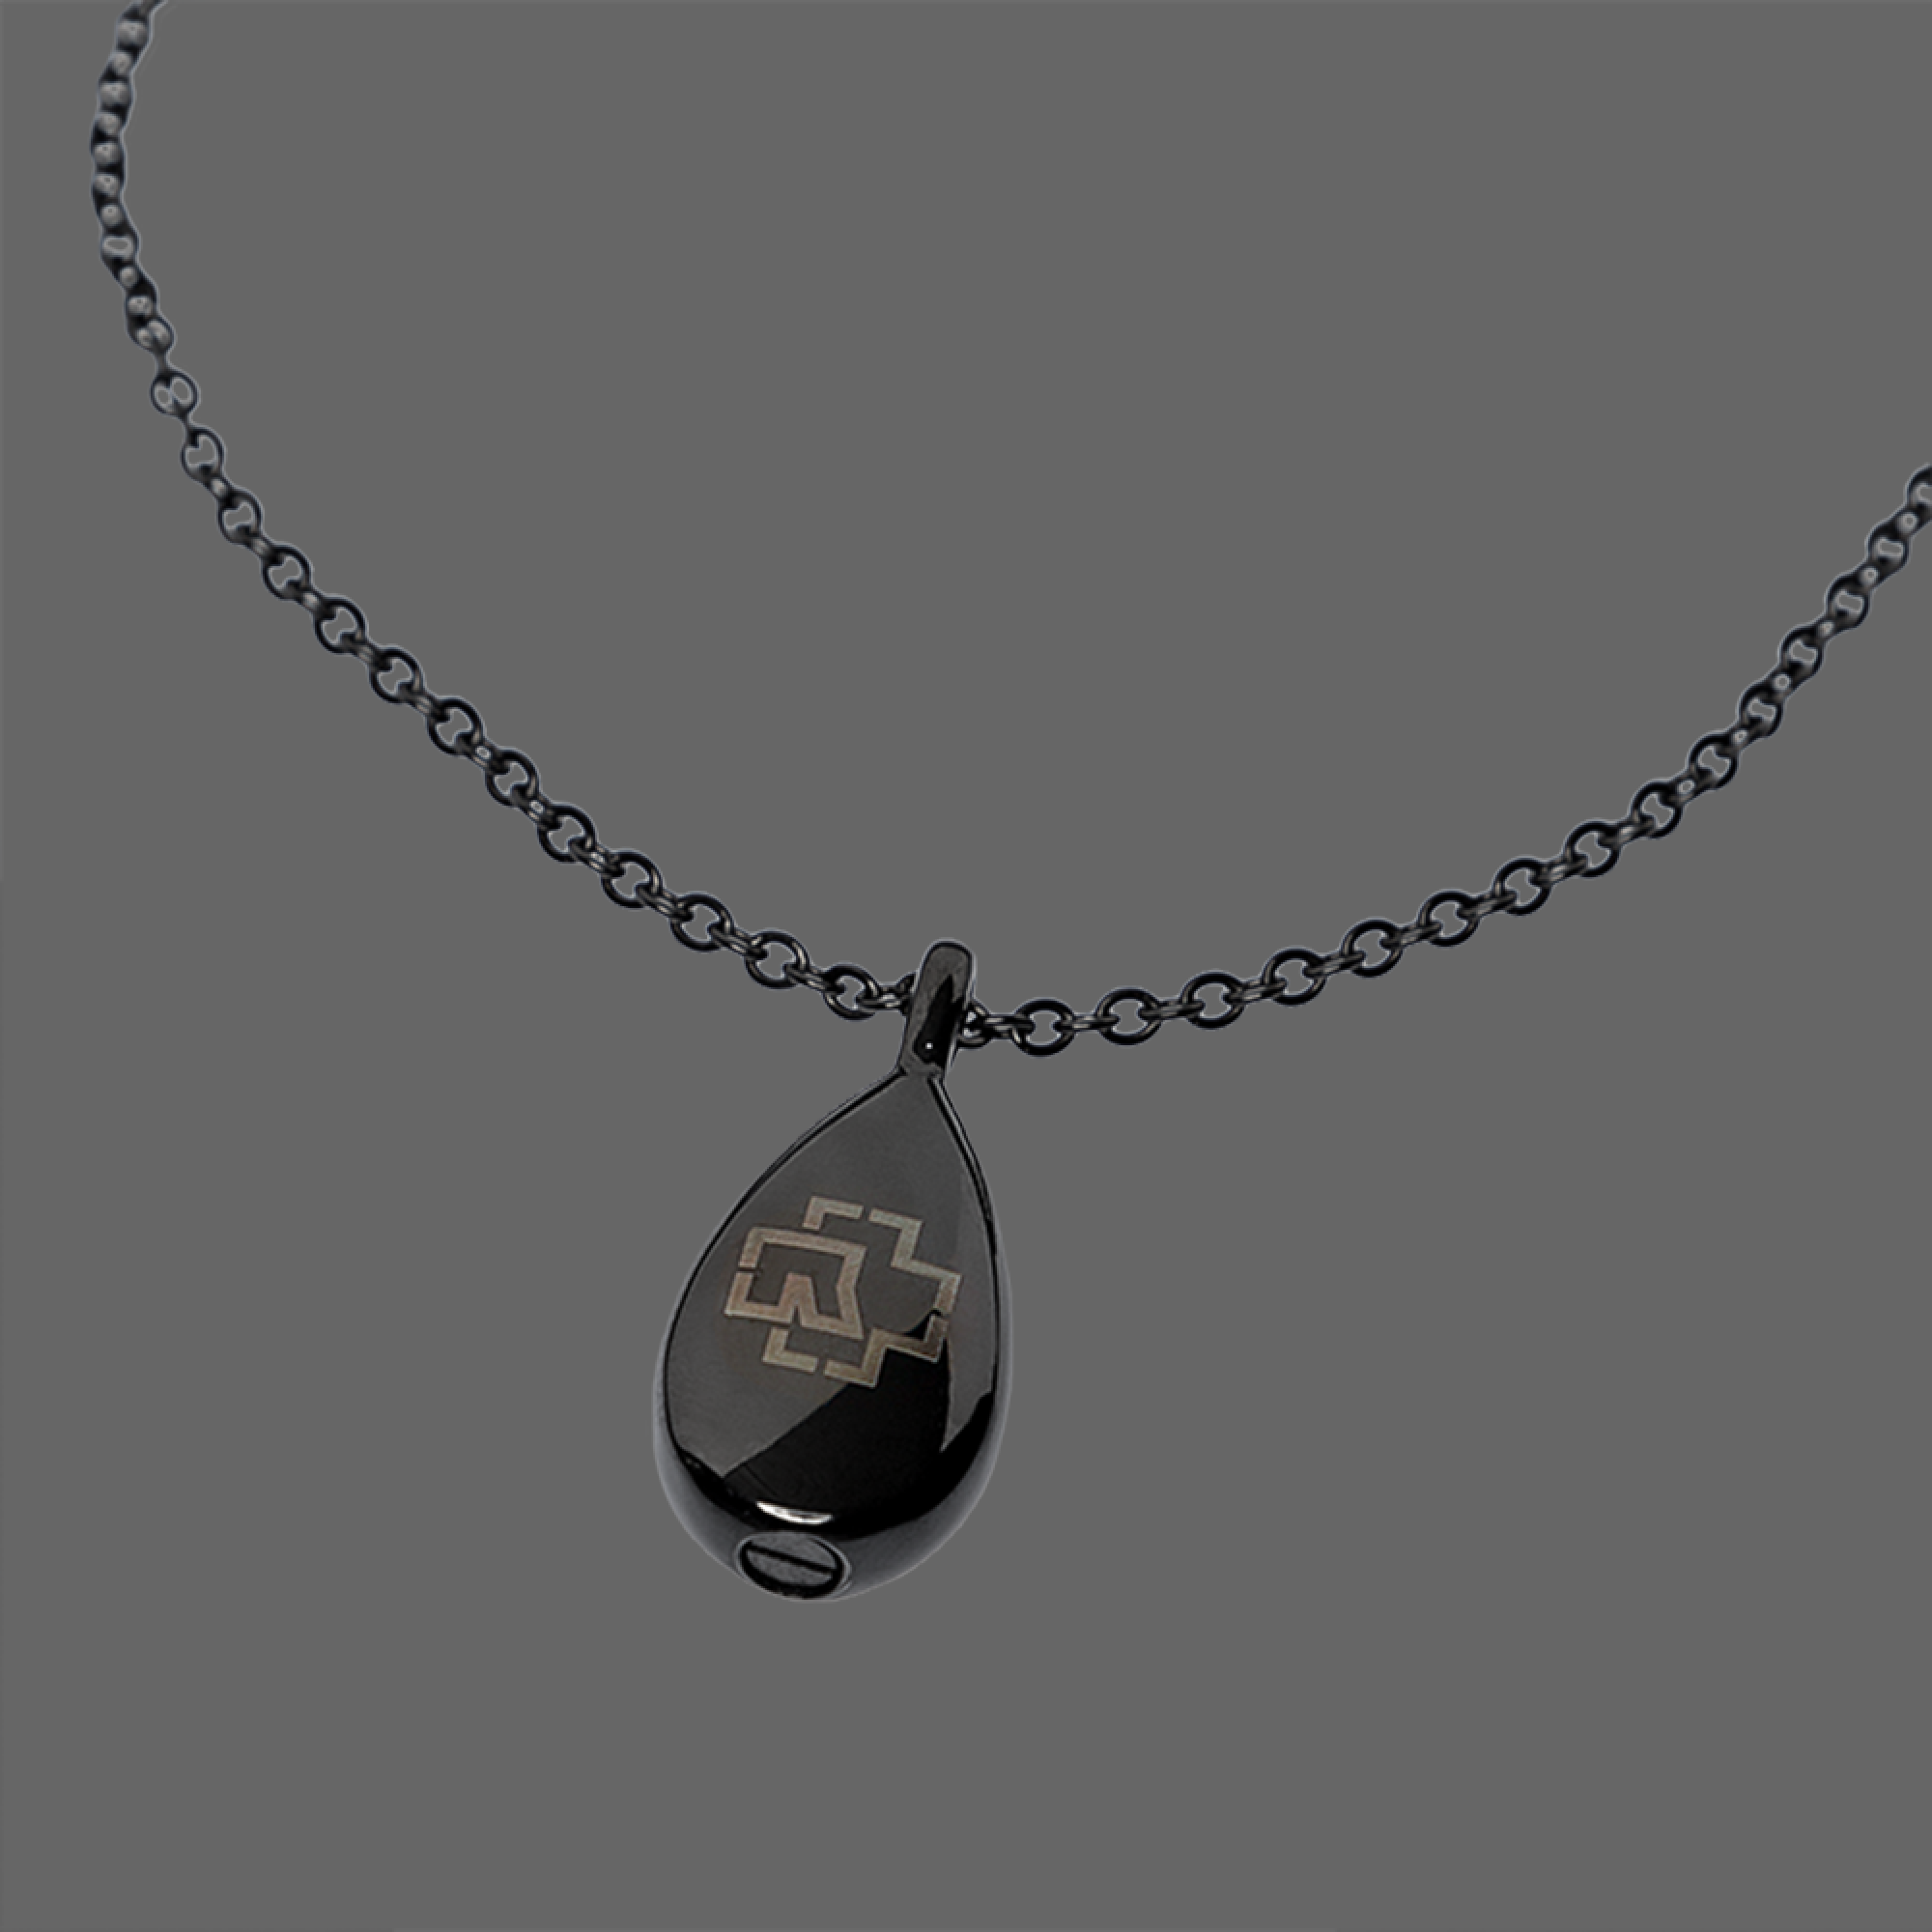 Pendant ”Meine Tränen” with necklace